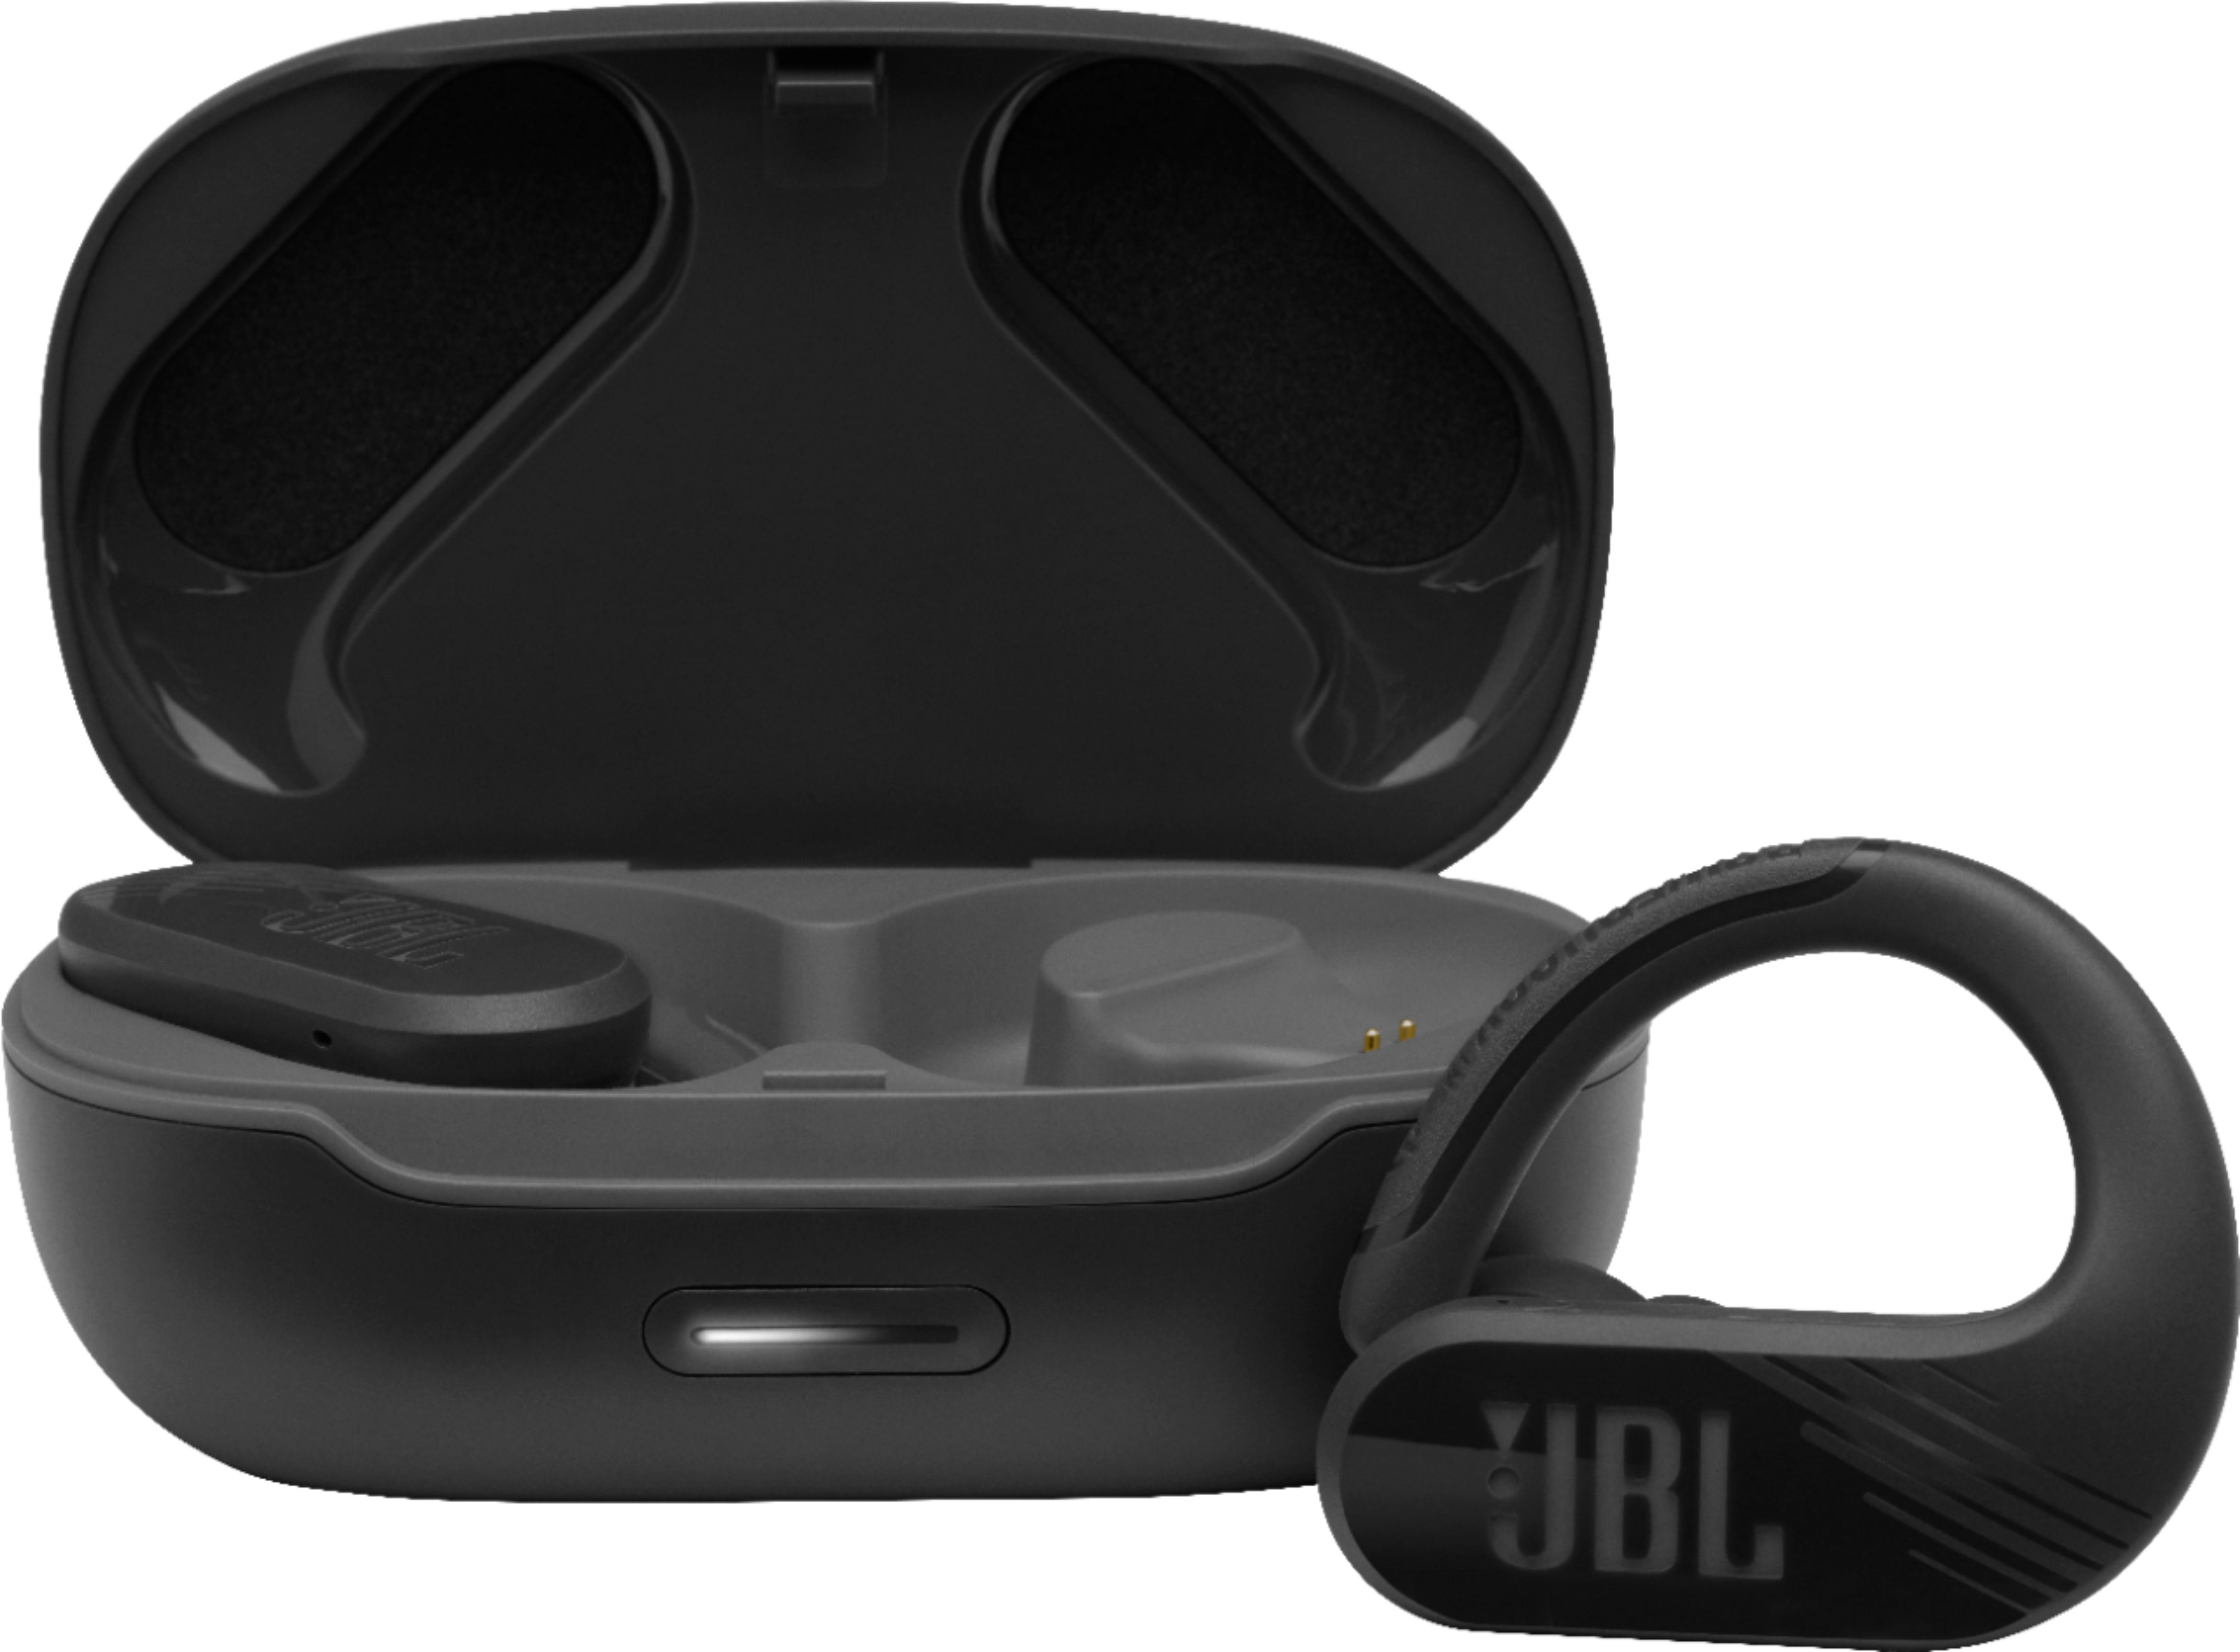 JBL Endurance Peak II True Wireless In-Ear Earbuds Black JBLENDURPEAKIIBKAM - Best Buy | Best Buy U.S.